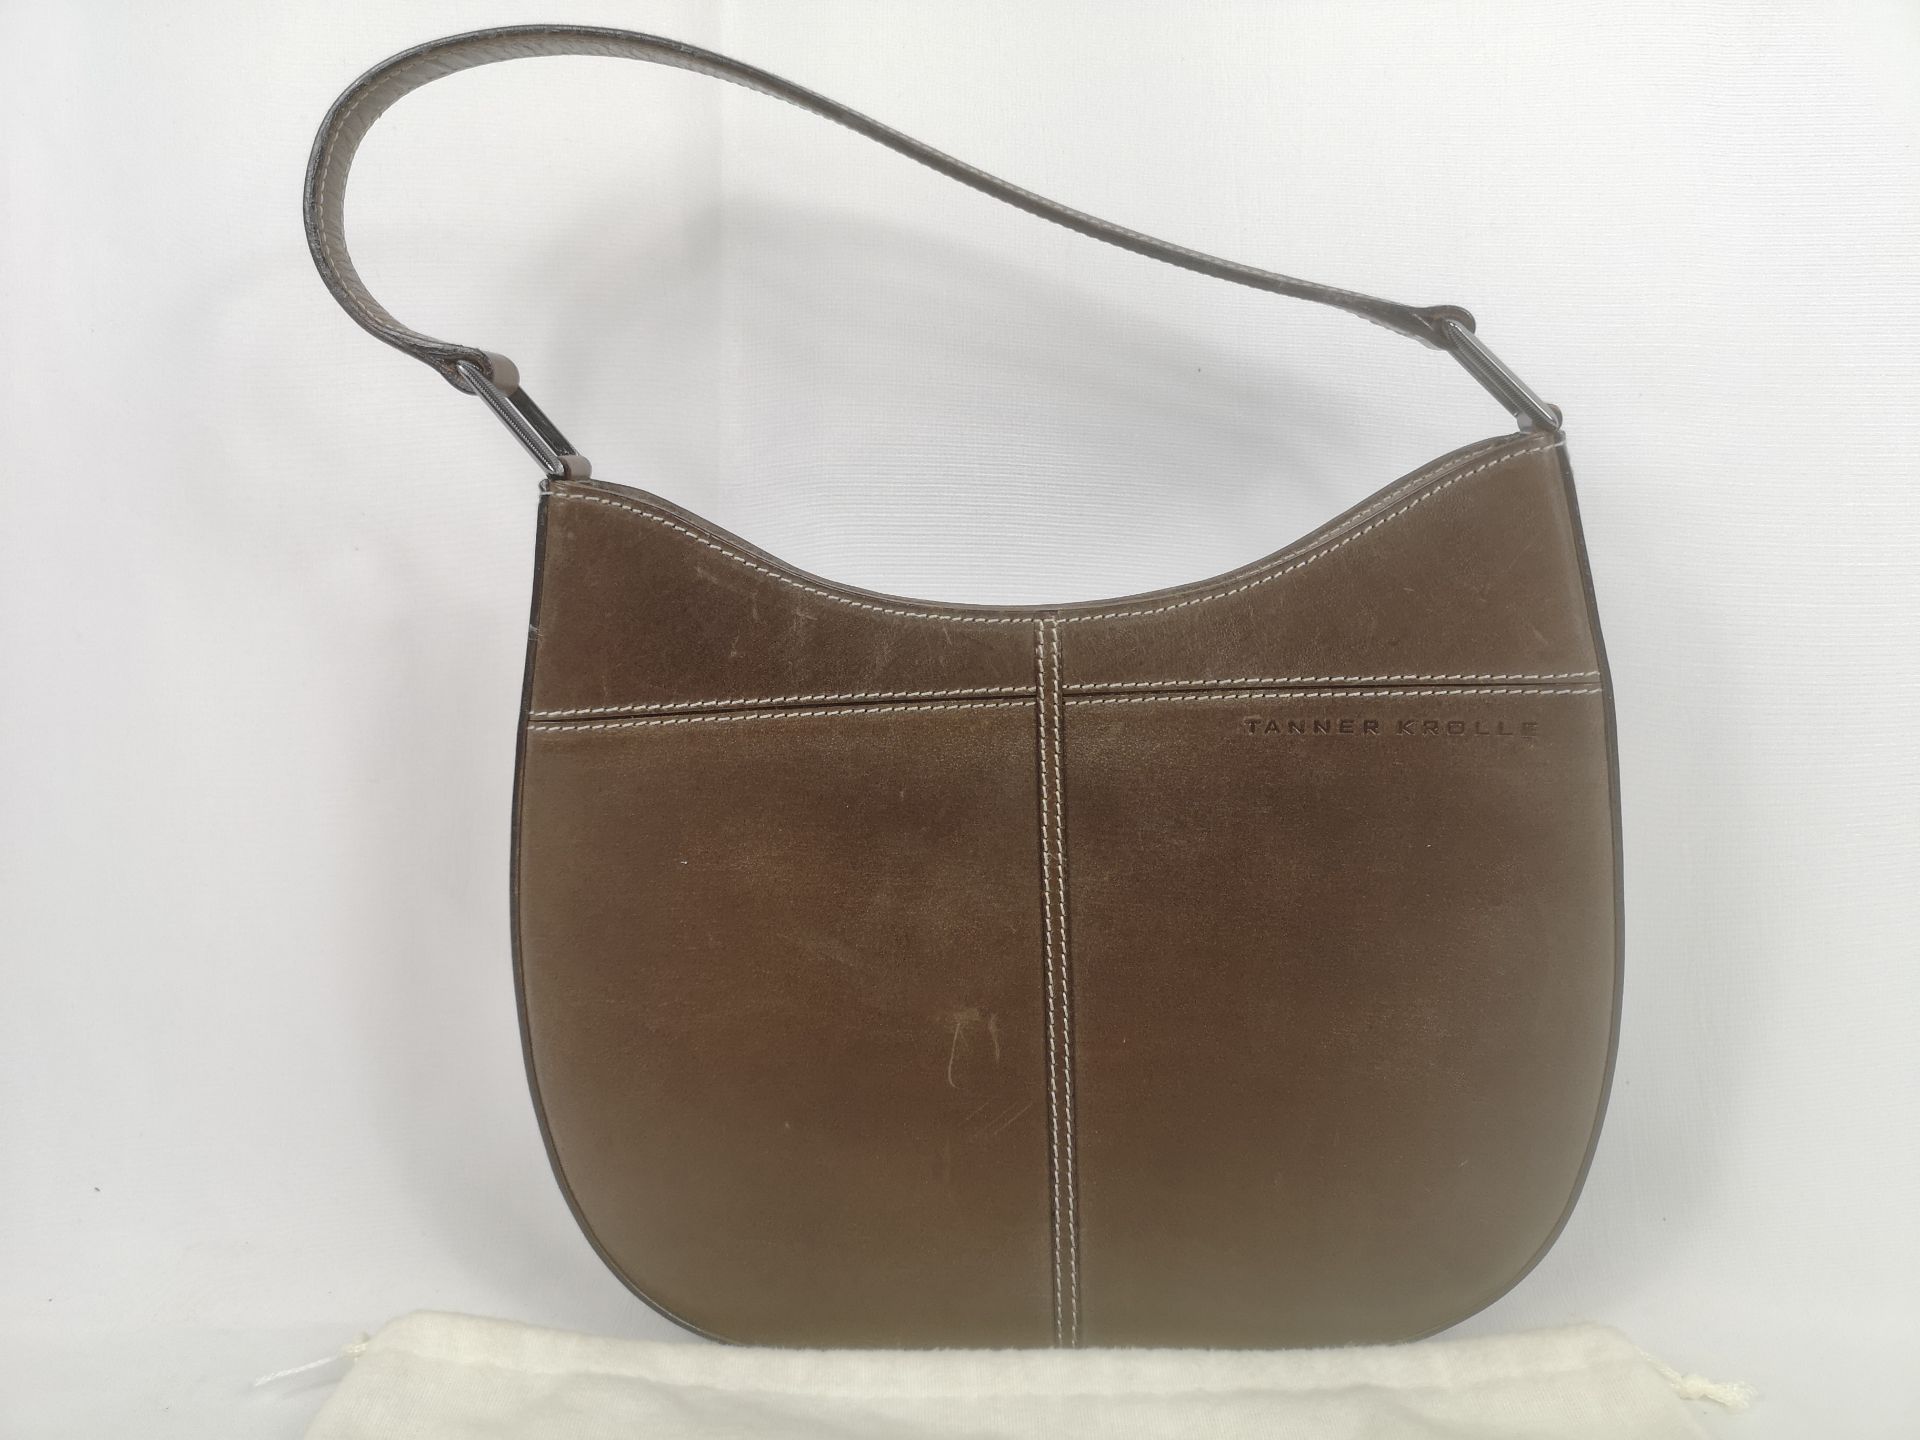 Tanner Krolle leather shoulder bag - Image 2 of 6